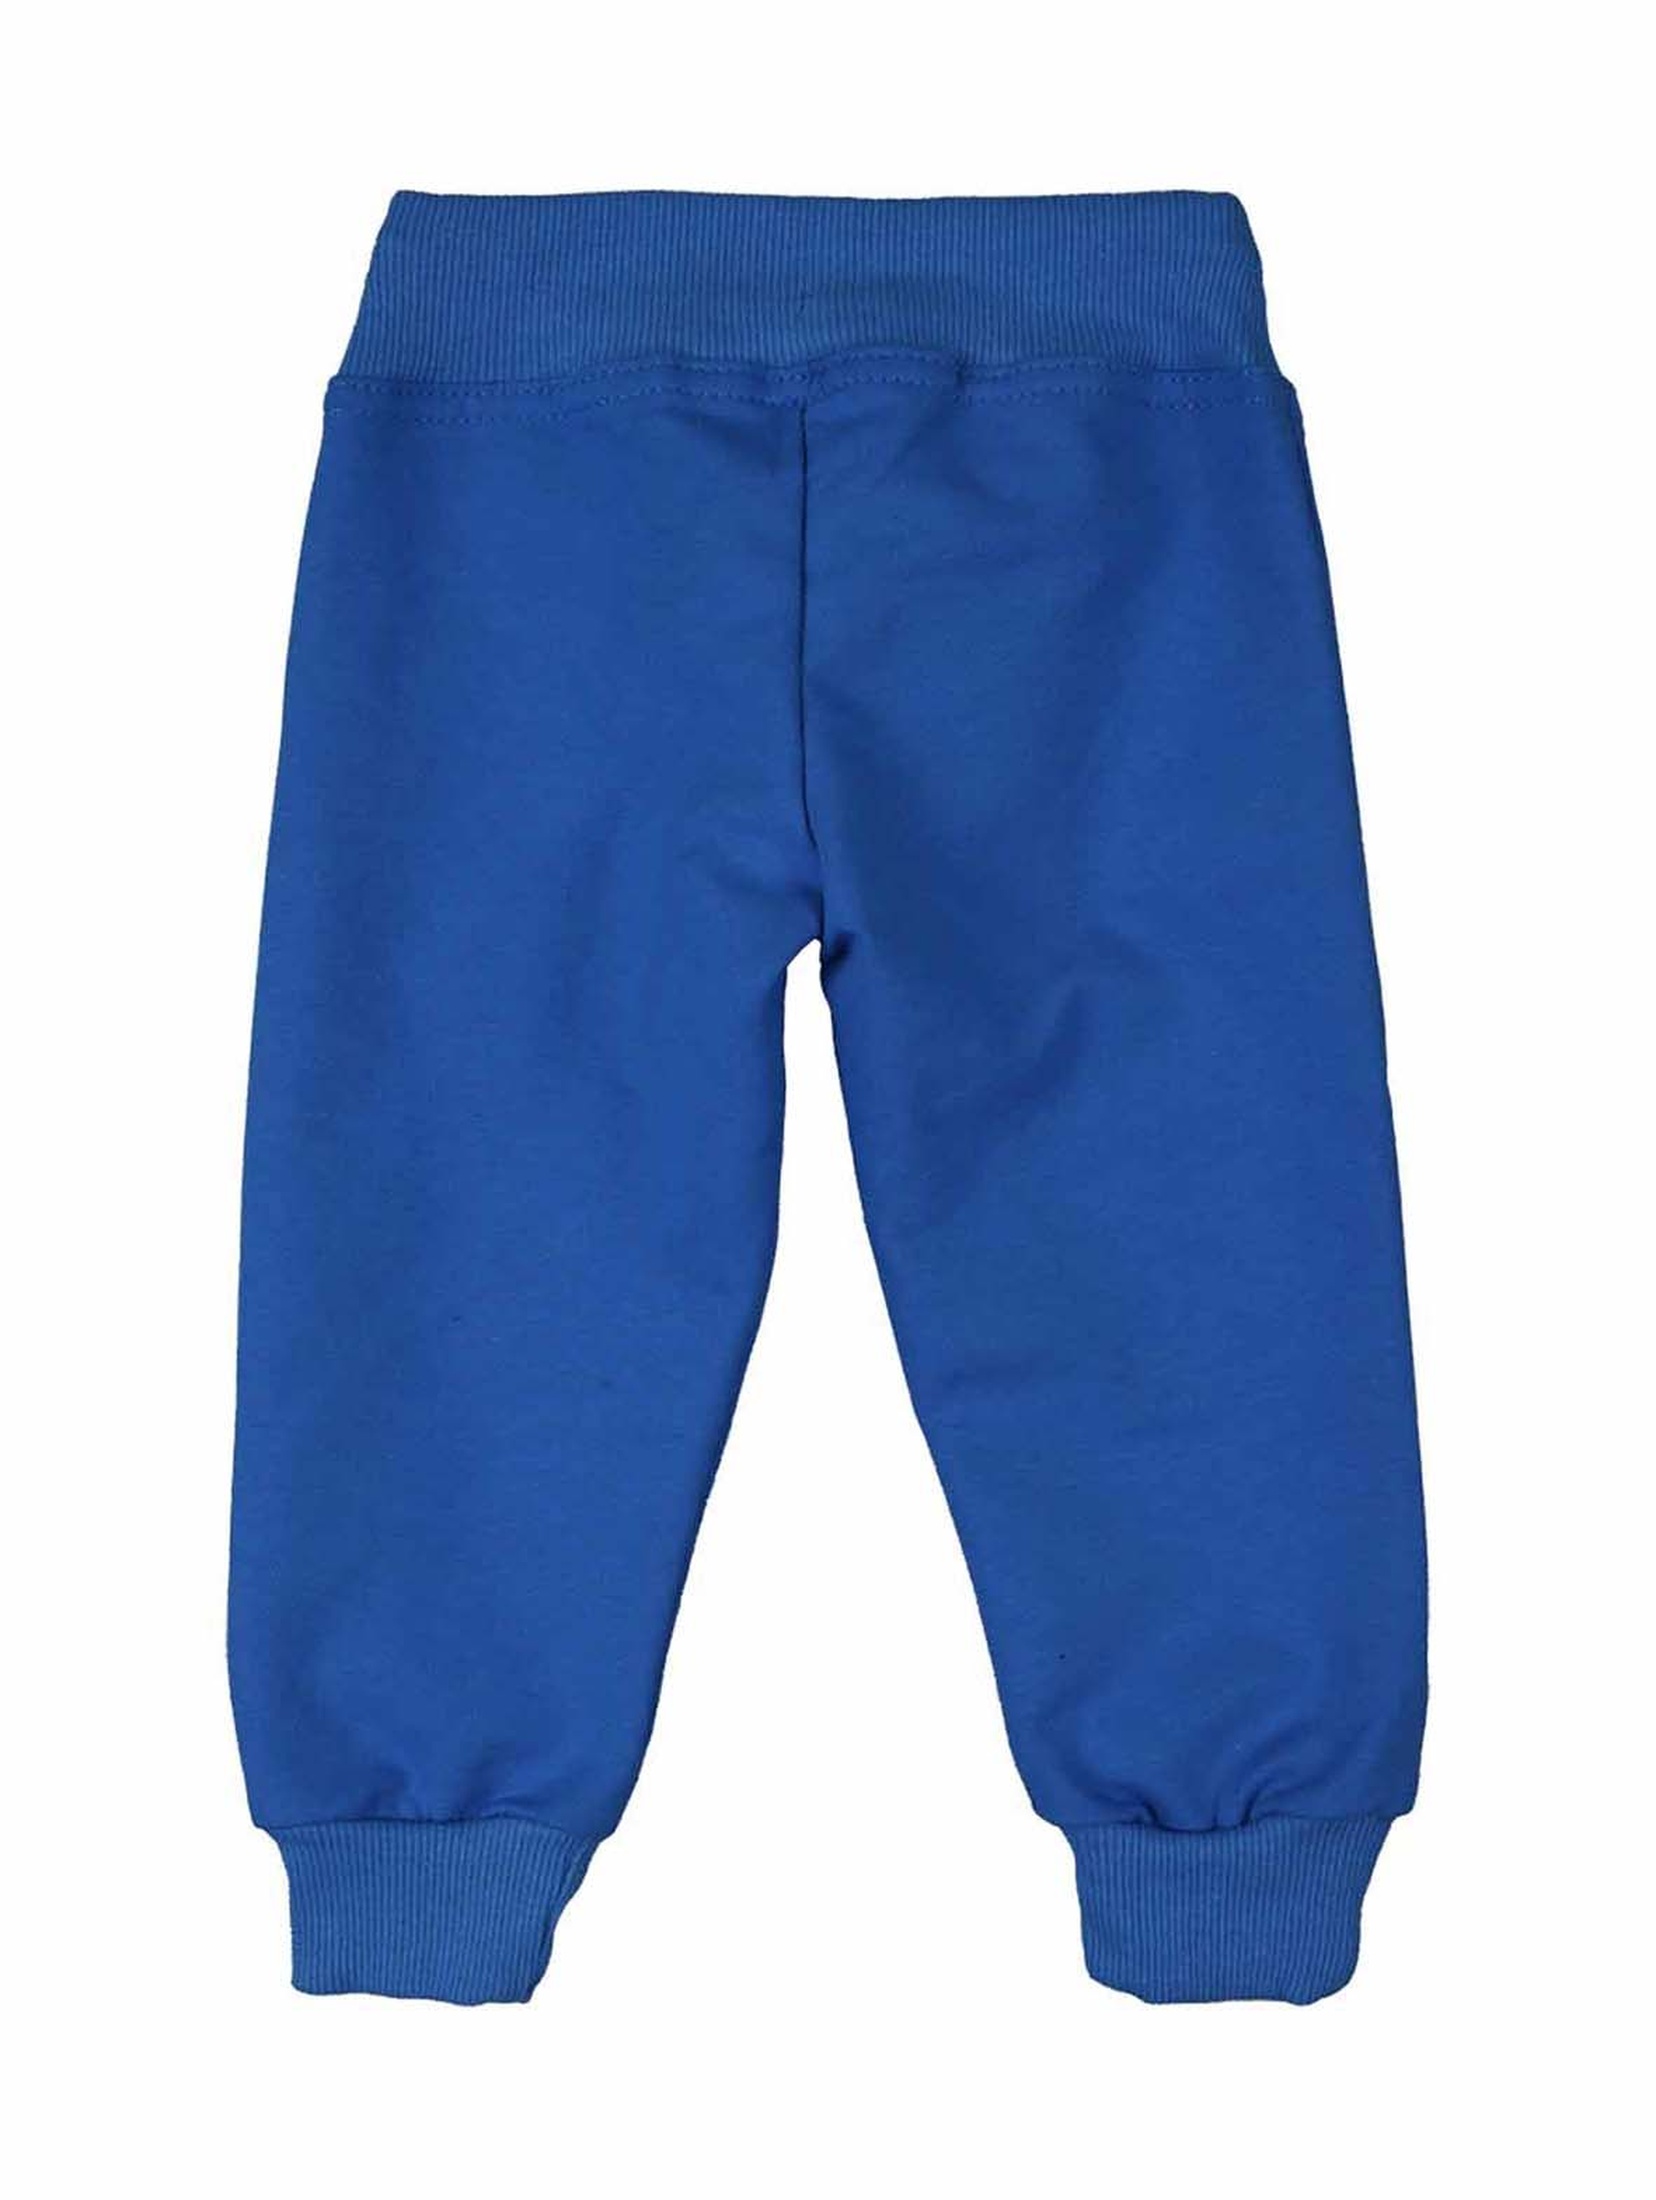 Spodnie dresowe chłopięce niebieskie z dzianiny Tup Tup